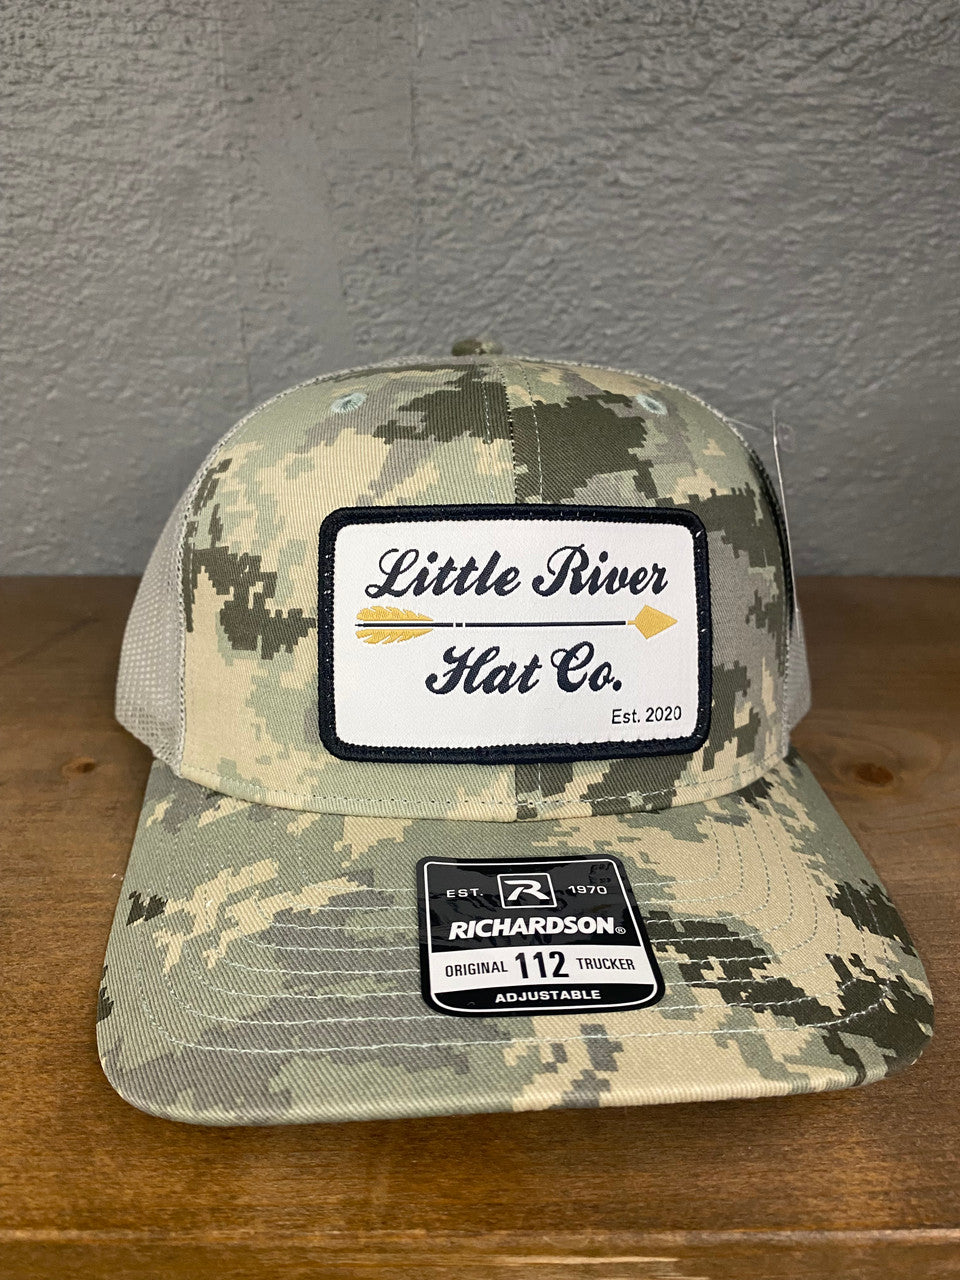 Littler River Hats